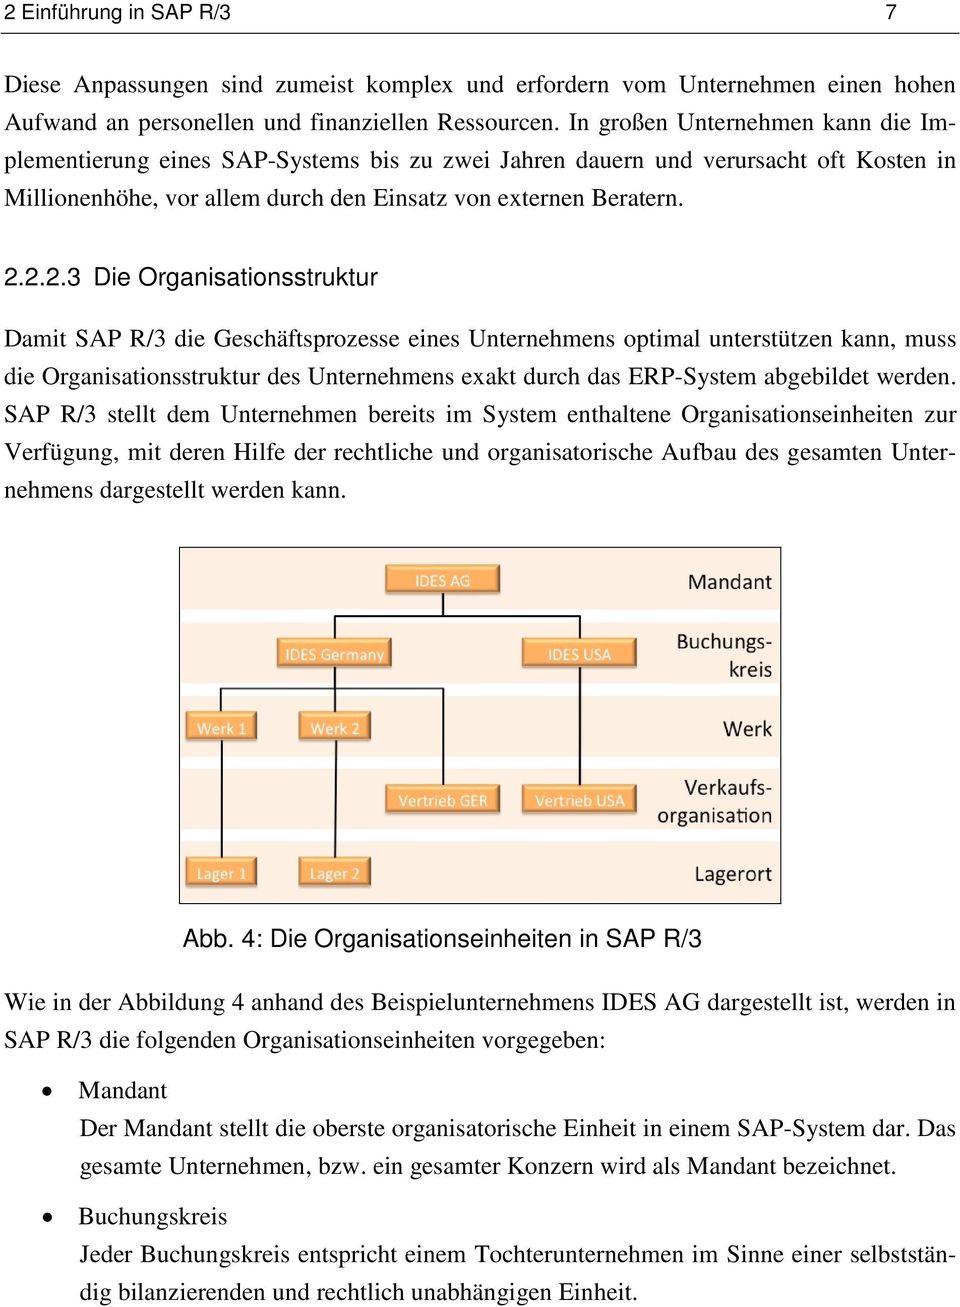 2.2.3 Die Organisationsstruktur Damit SAP R/3 die Geschäftsprozesse eines Unternehmens optimal unterstützen kann, muss die Organisationsstruktur des Unternehmens exakt durch das ERP-System abgebildet